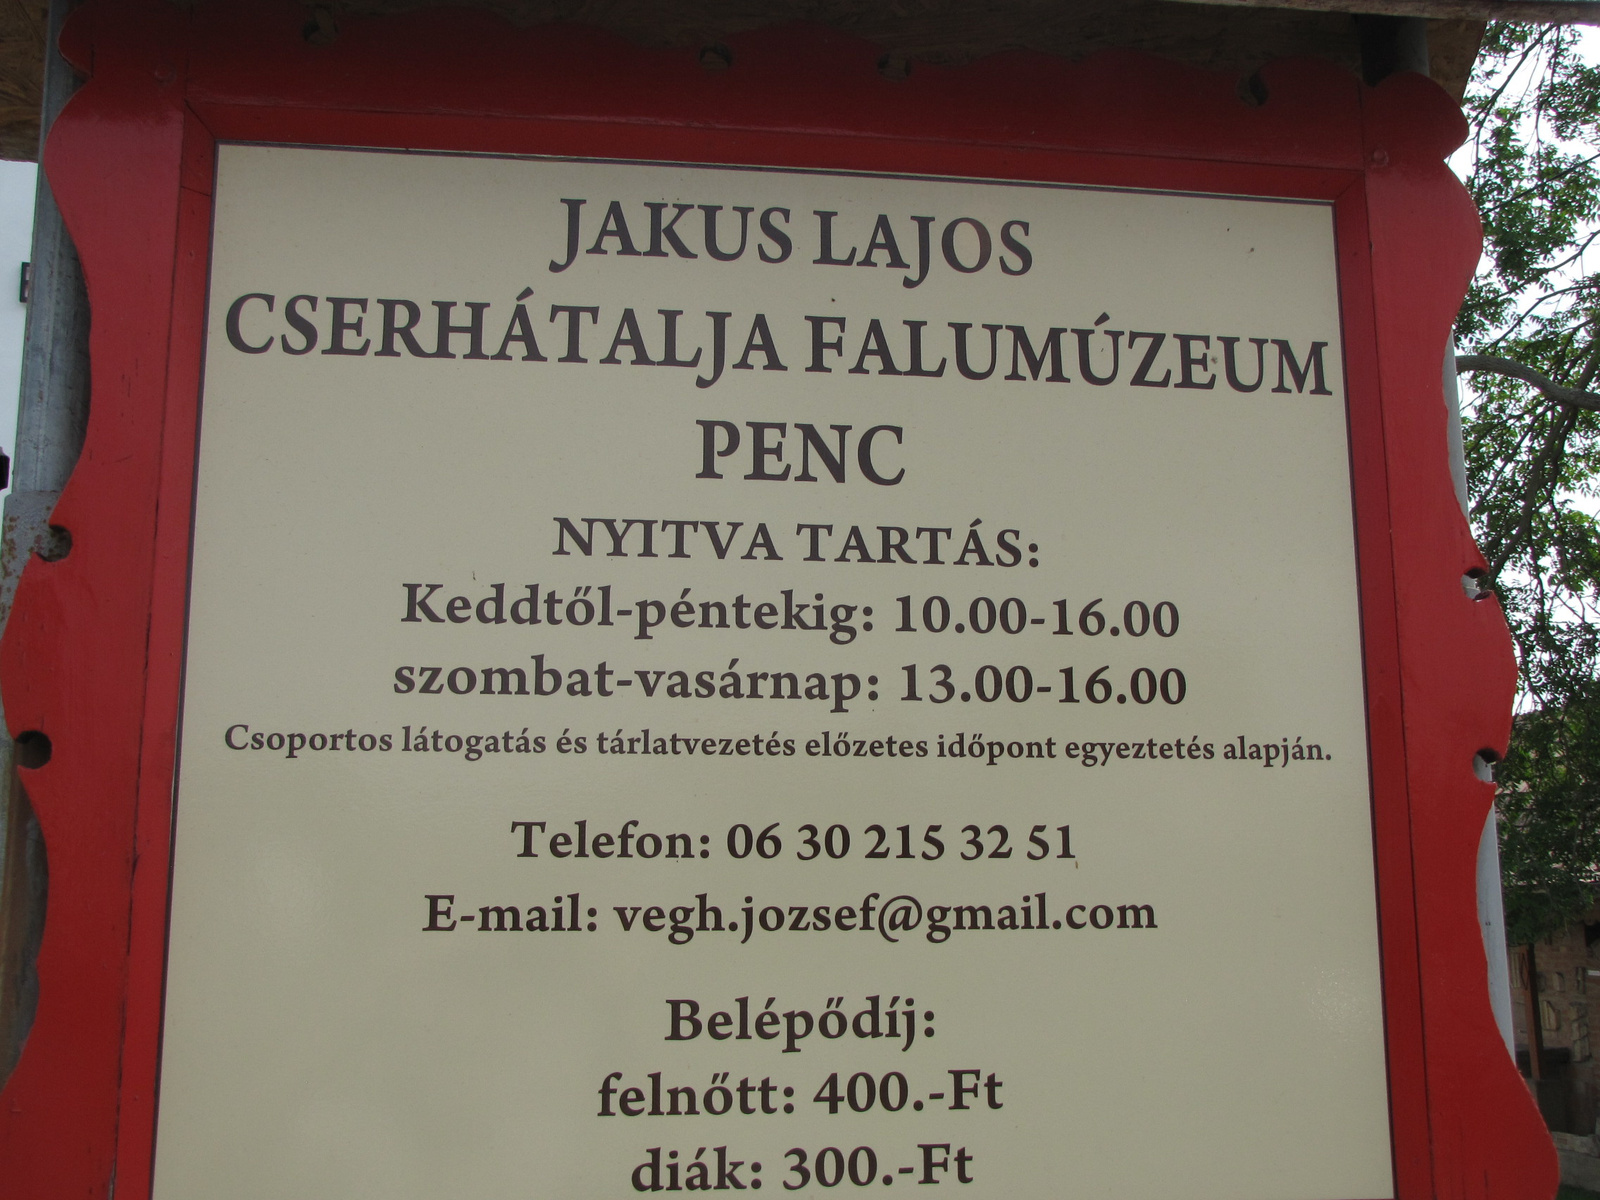 Penc, Jakus Lajos Cserhátalja Falumúzeum, SzG3